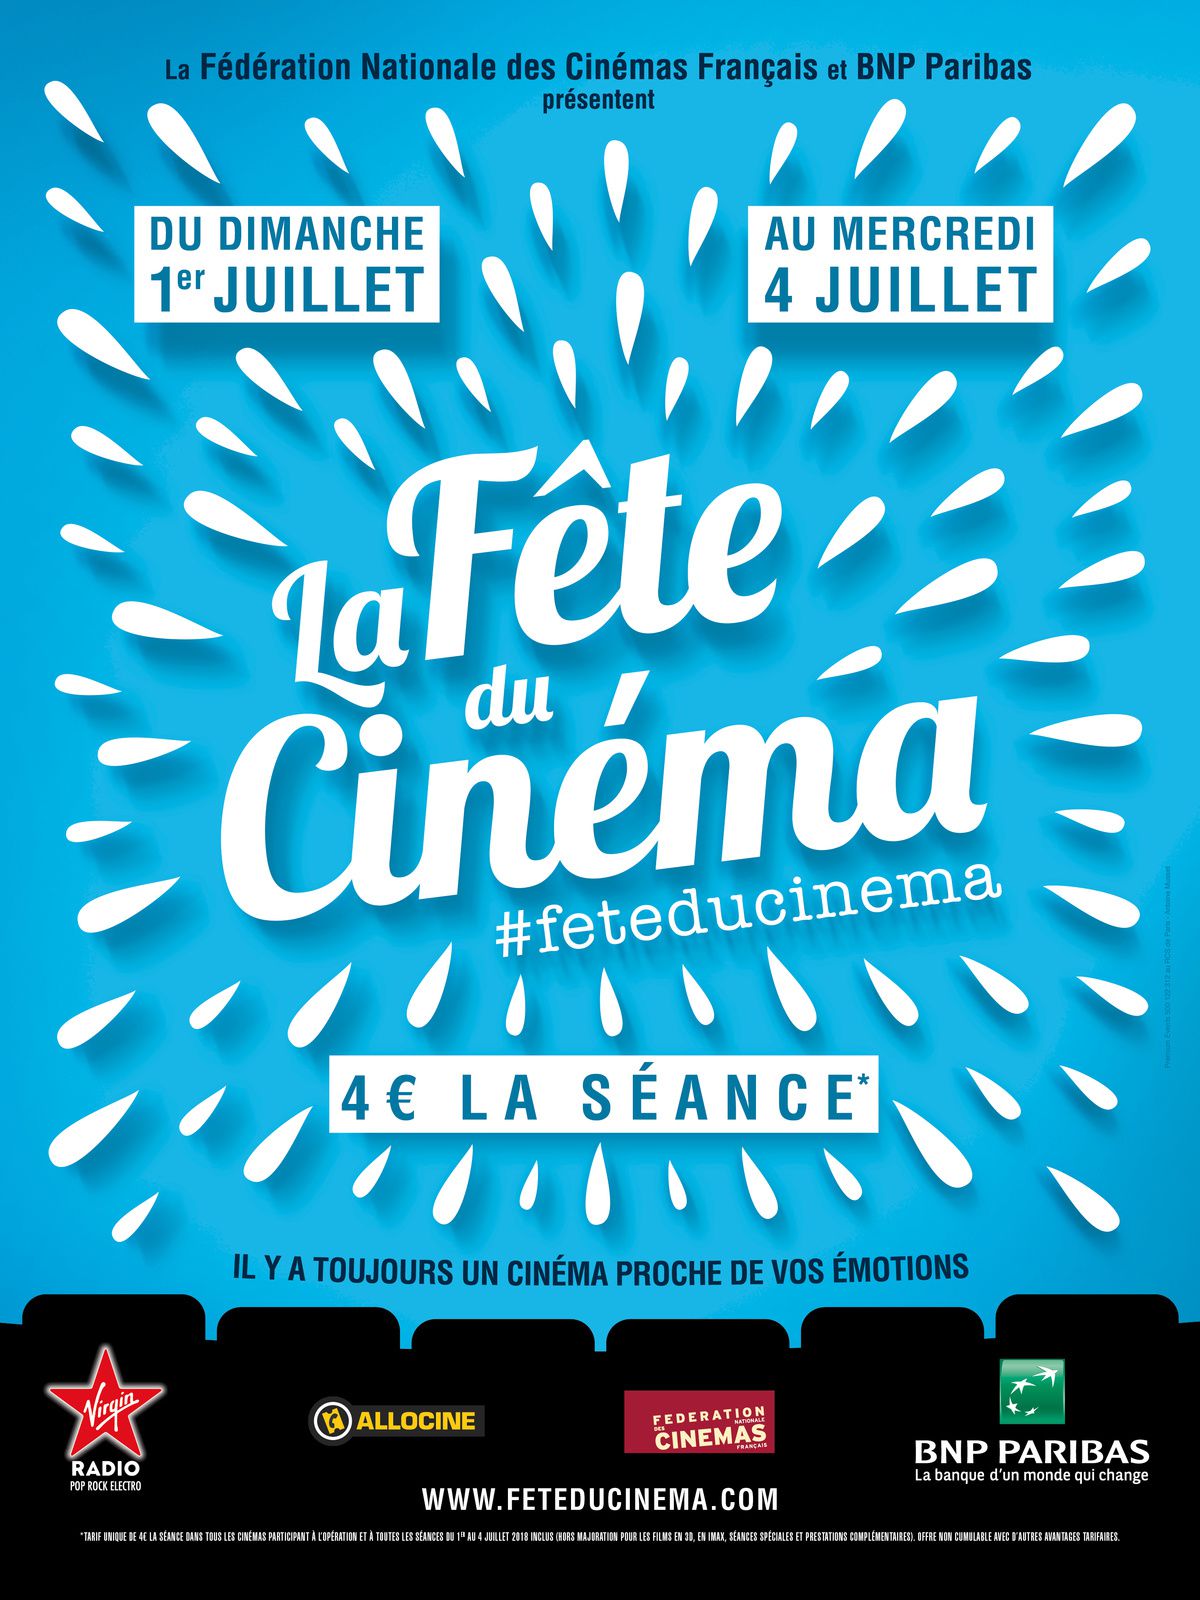 La Fête du Cinéma 2018 du dimanche 1er juillet au mercredi 4 juillet 2018 inclus. 4 euros la séance (BANDE-ANNONCE)